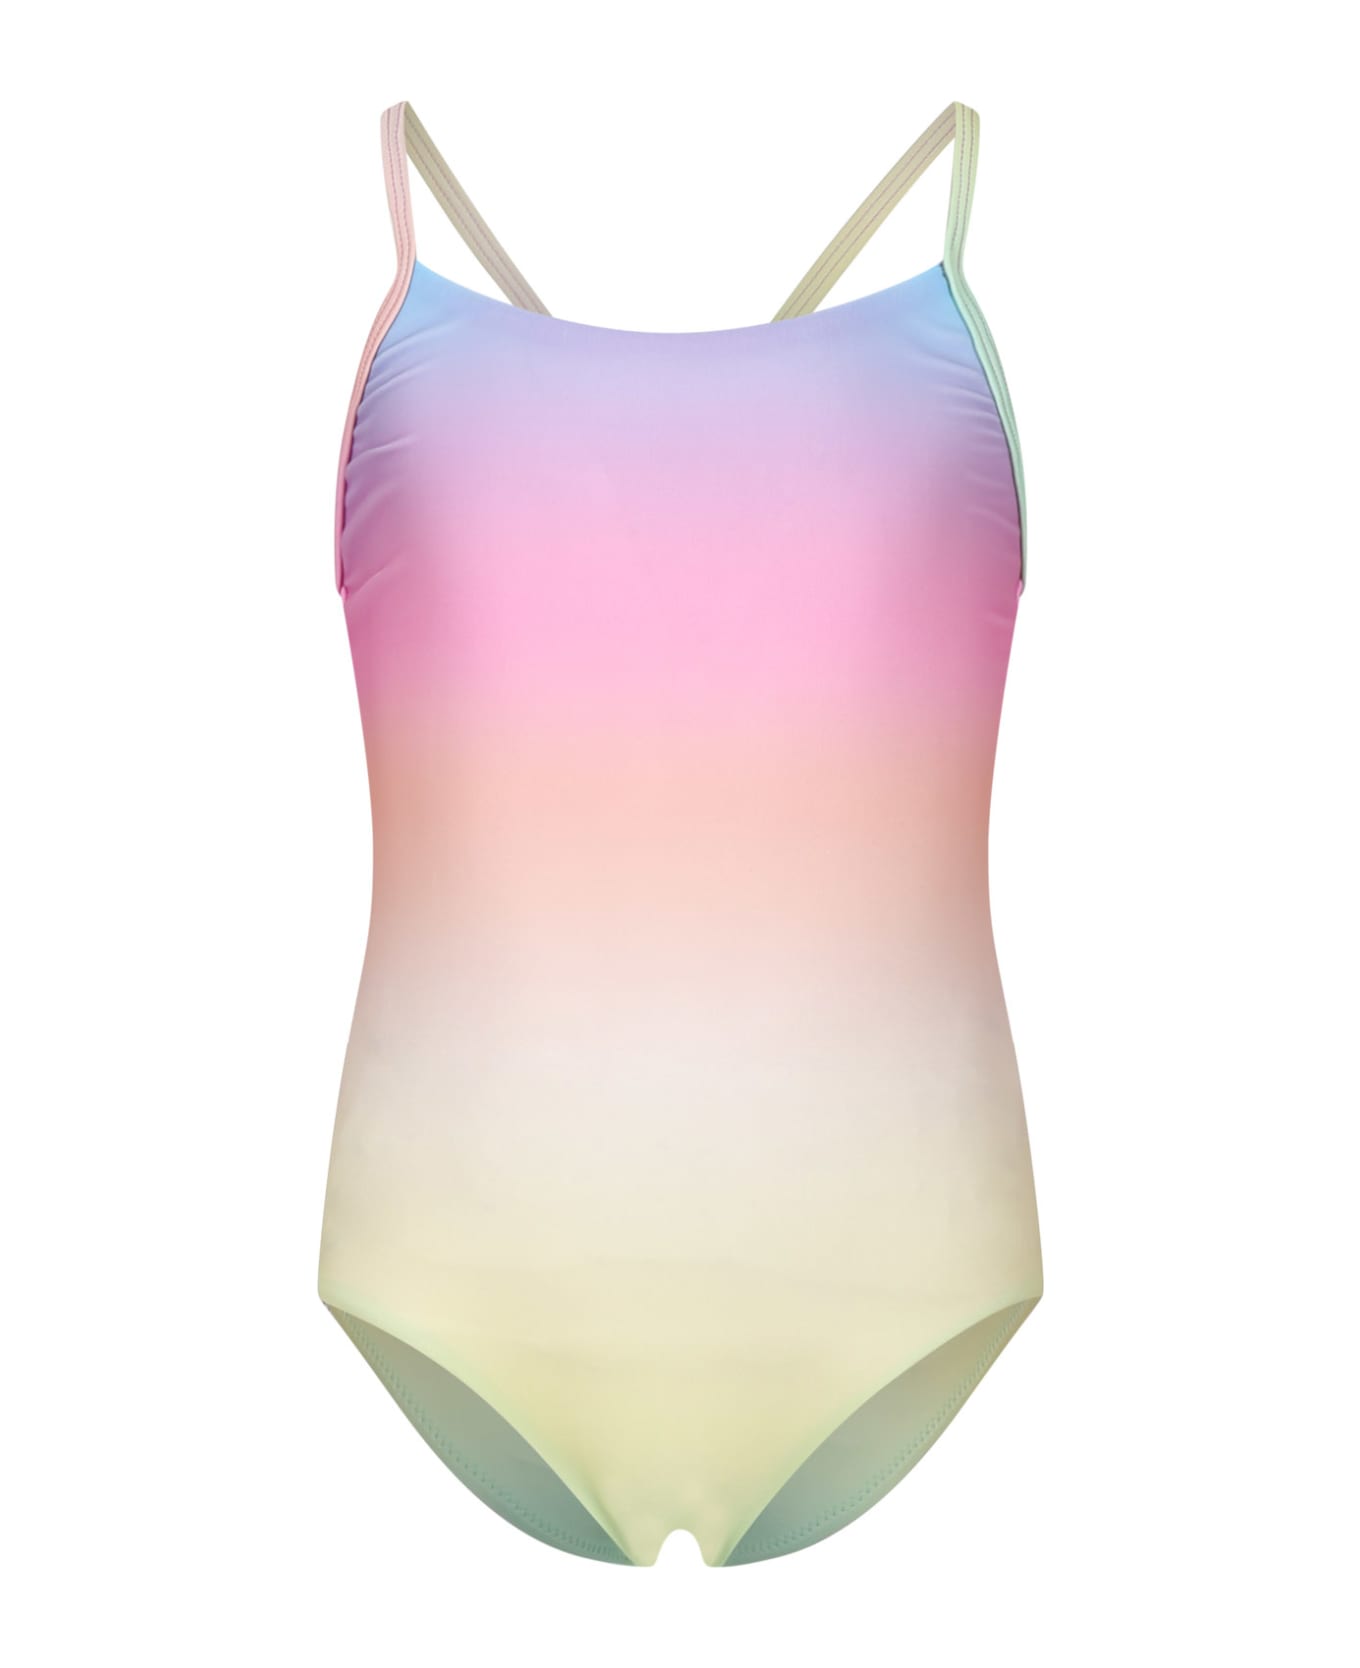 Molo Multicolor Swimsuit For Girl With Print - Multicolor 水着